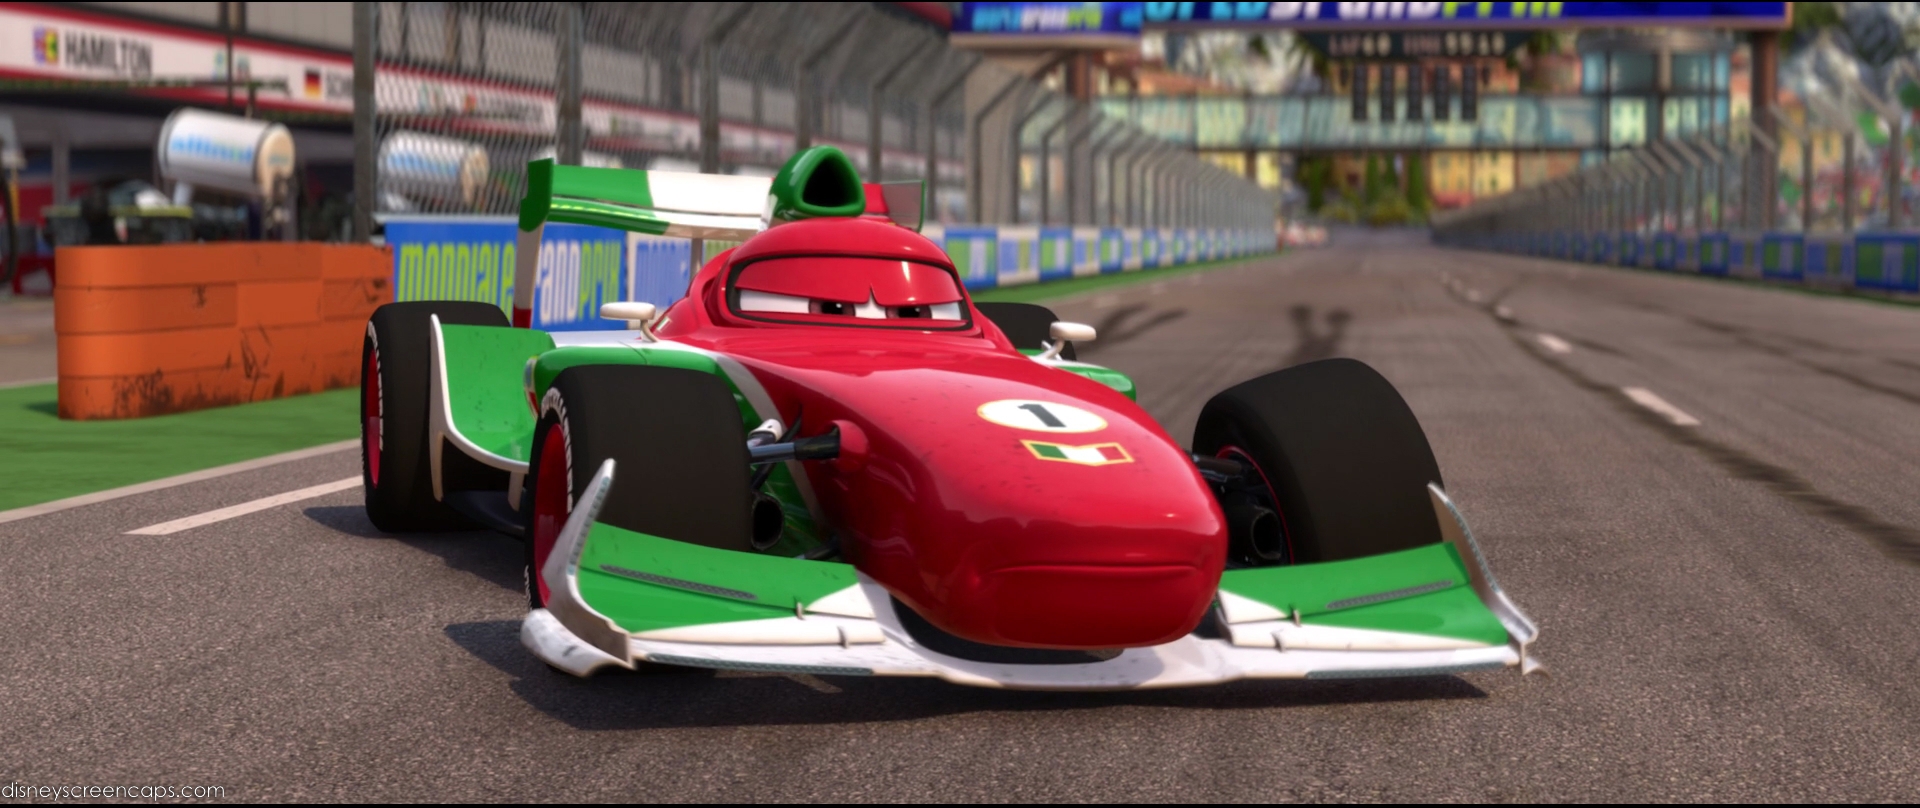 Image - Cars2-disneyscreencaps com-8205.jpg - Pixar Wiki - Disney Pixar ...